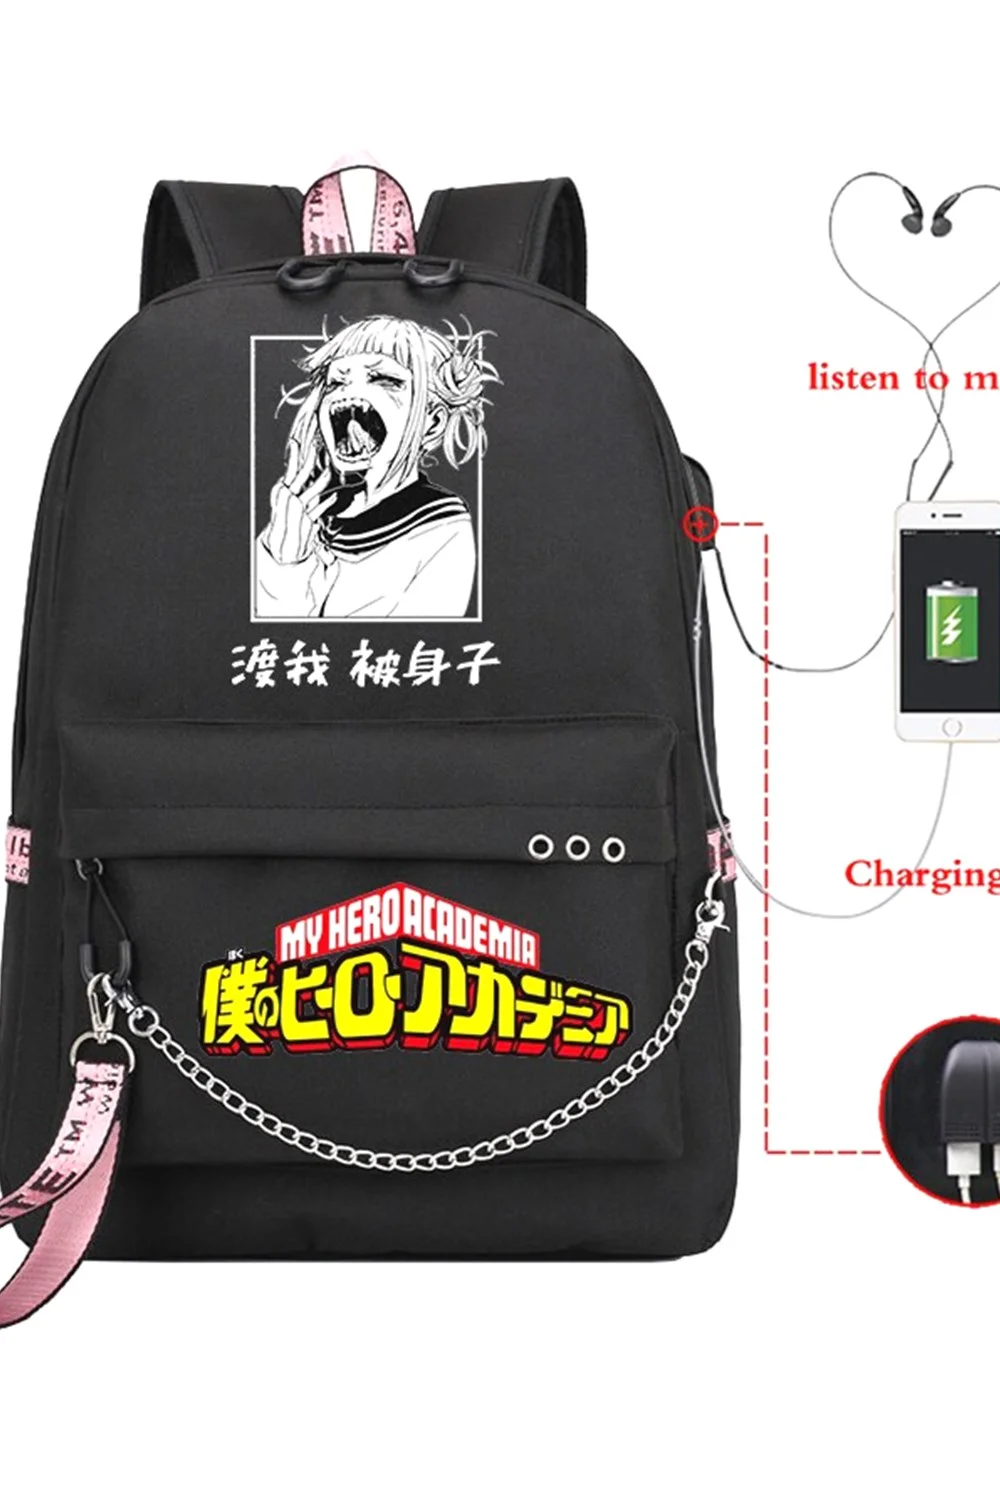  Boku No Hero Academia Himiko Toga Anime School Bag Mochila Usb Charging Backpack My Hero Academia Girls School Bag Mochila 921-1